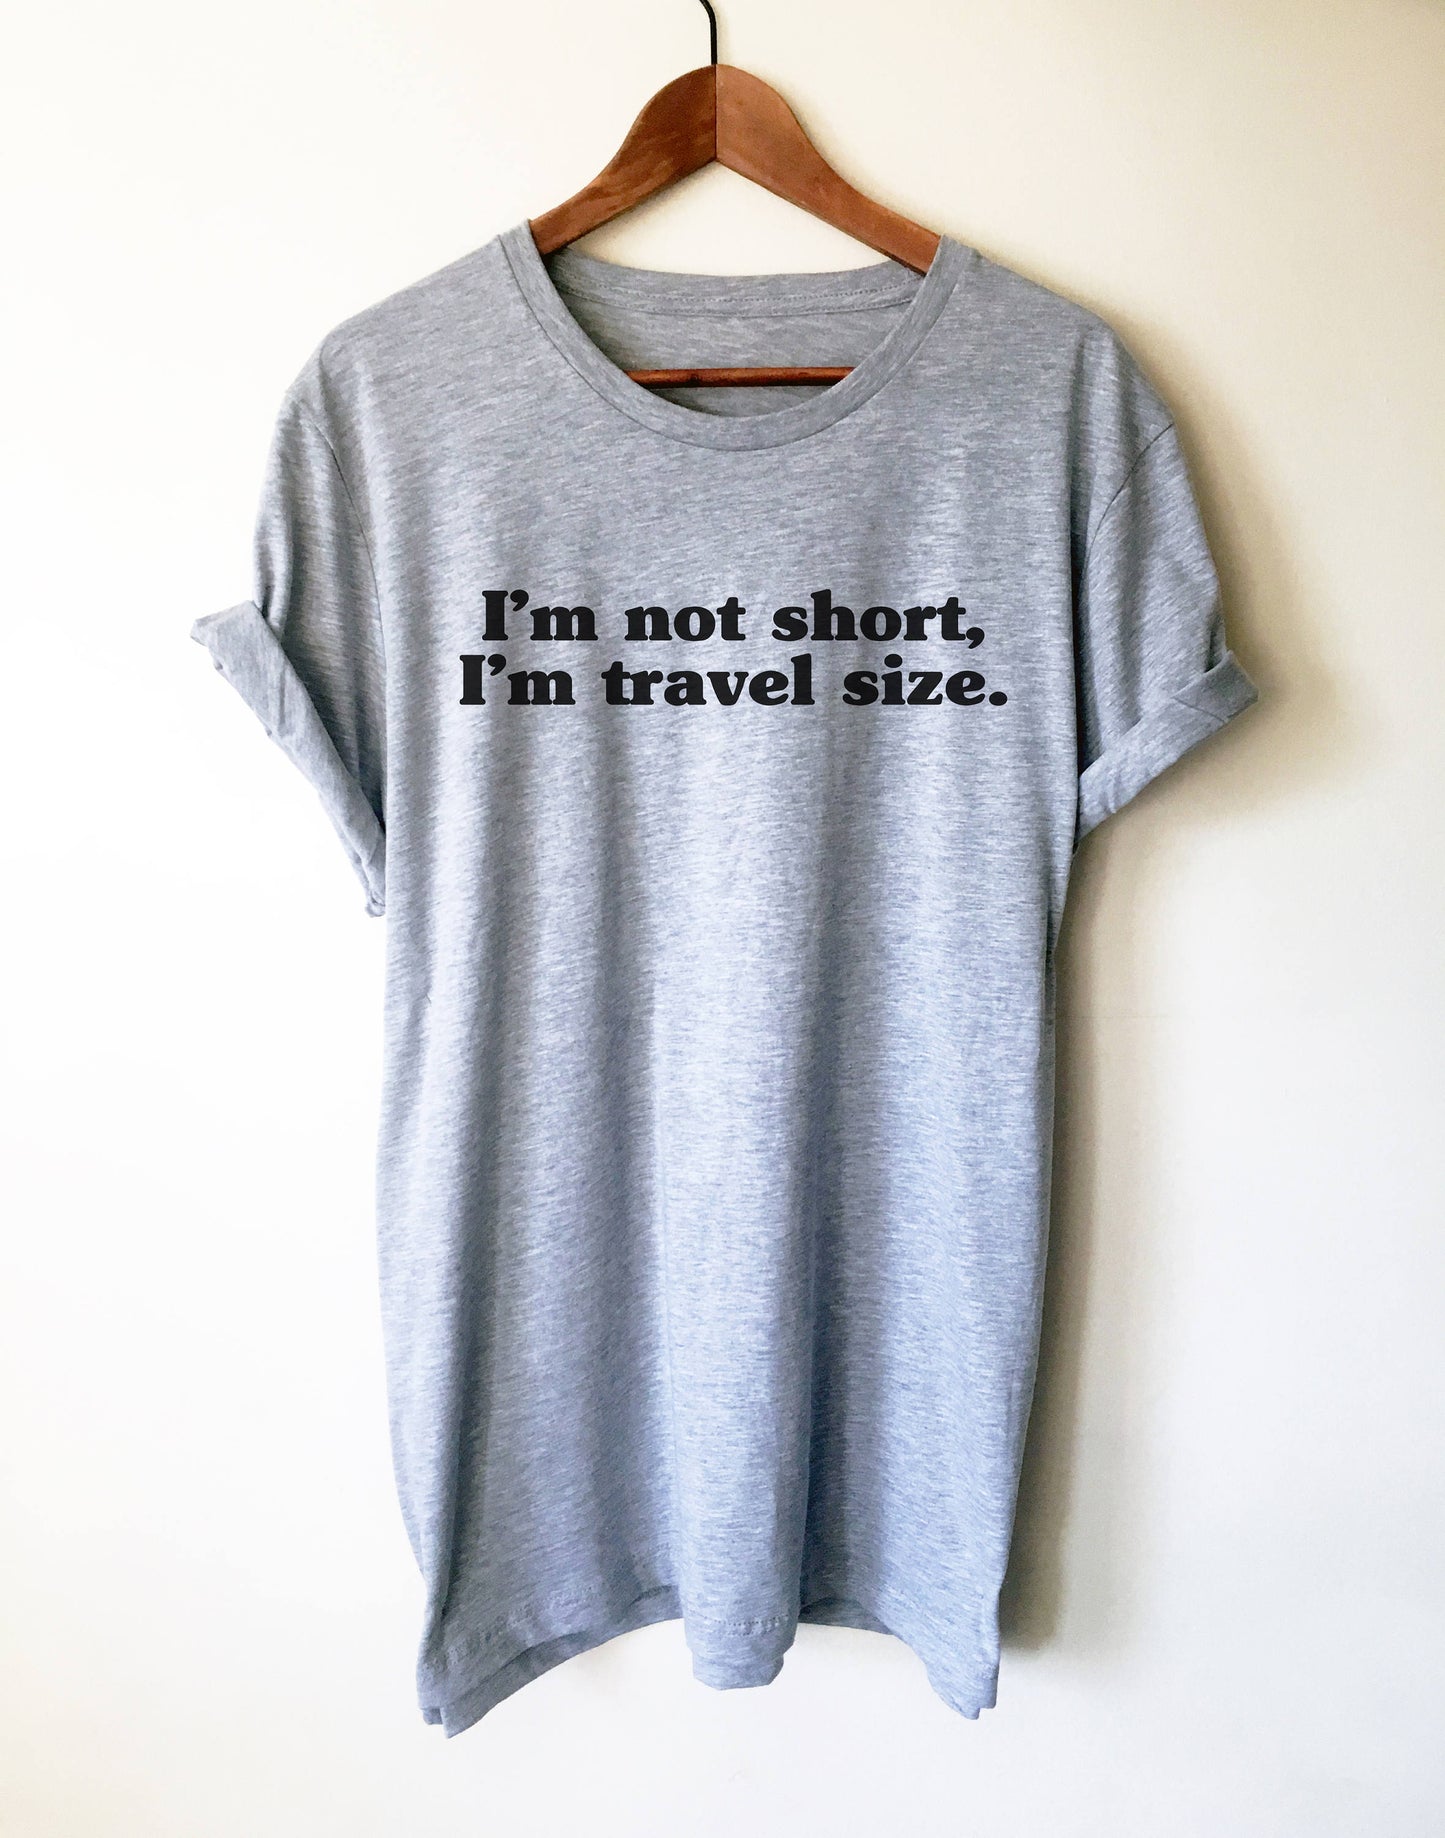 I'm Not Short, I'm Travel Size Unisex Shirt - Backpacking shirt | Travel shirt | World traveler shirt | Wanderlust shirt | Gap year travel